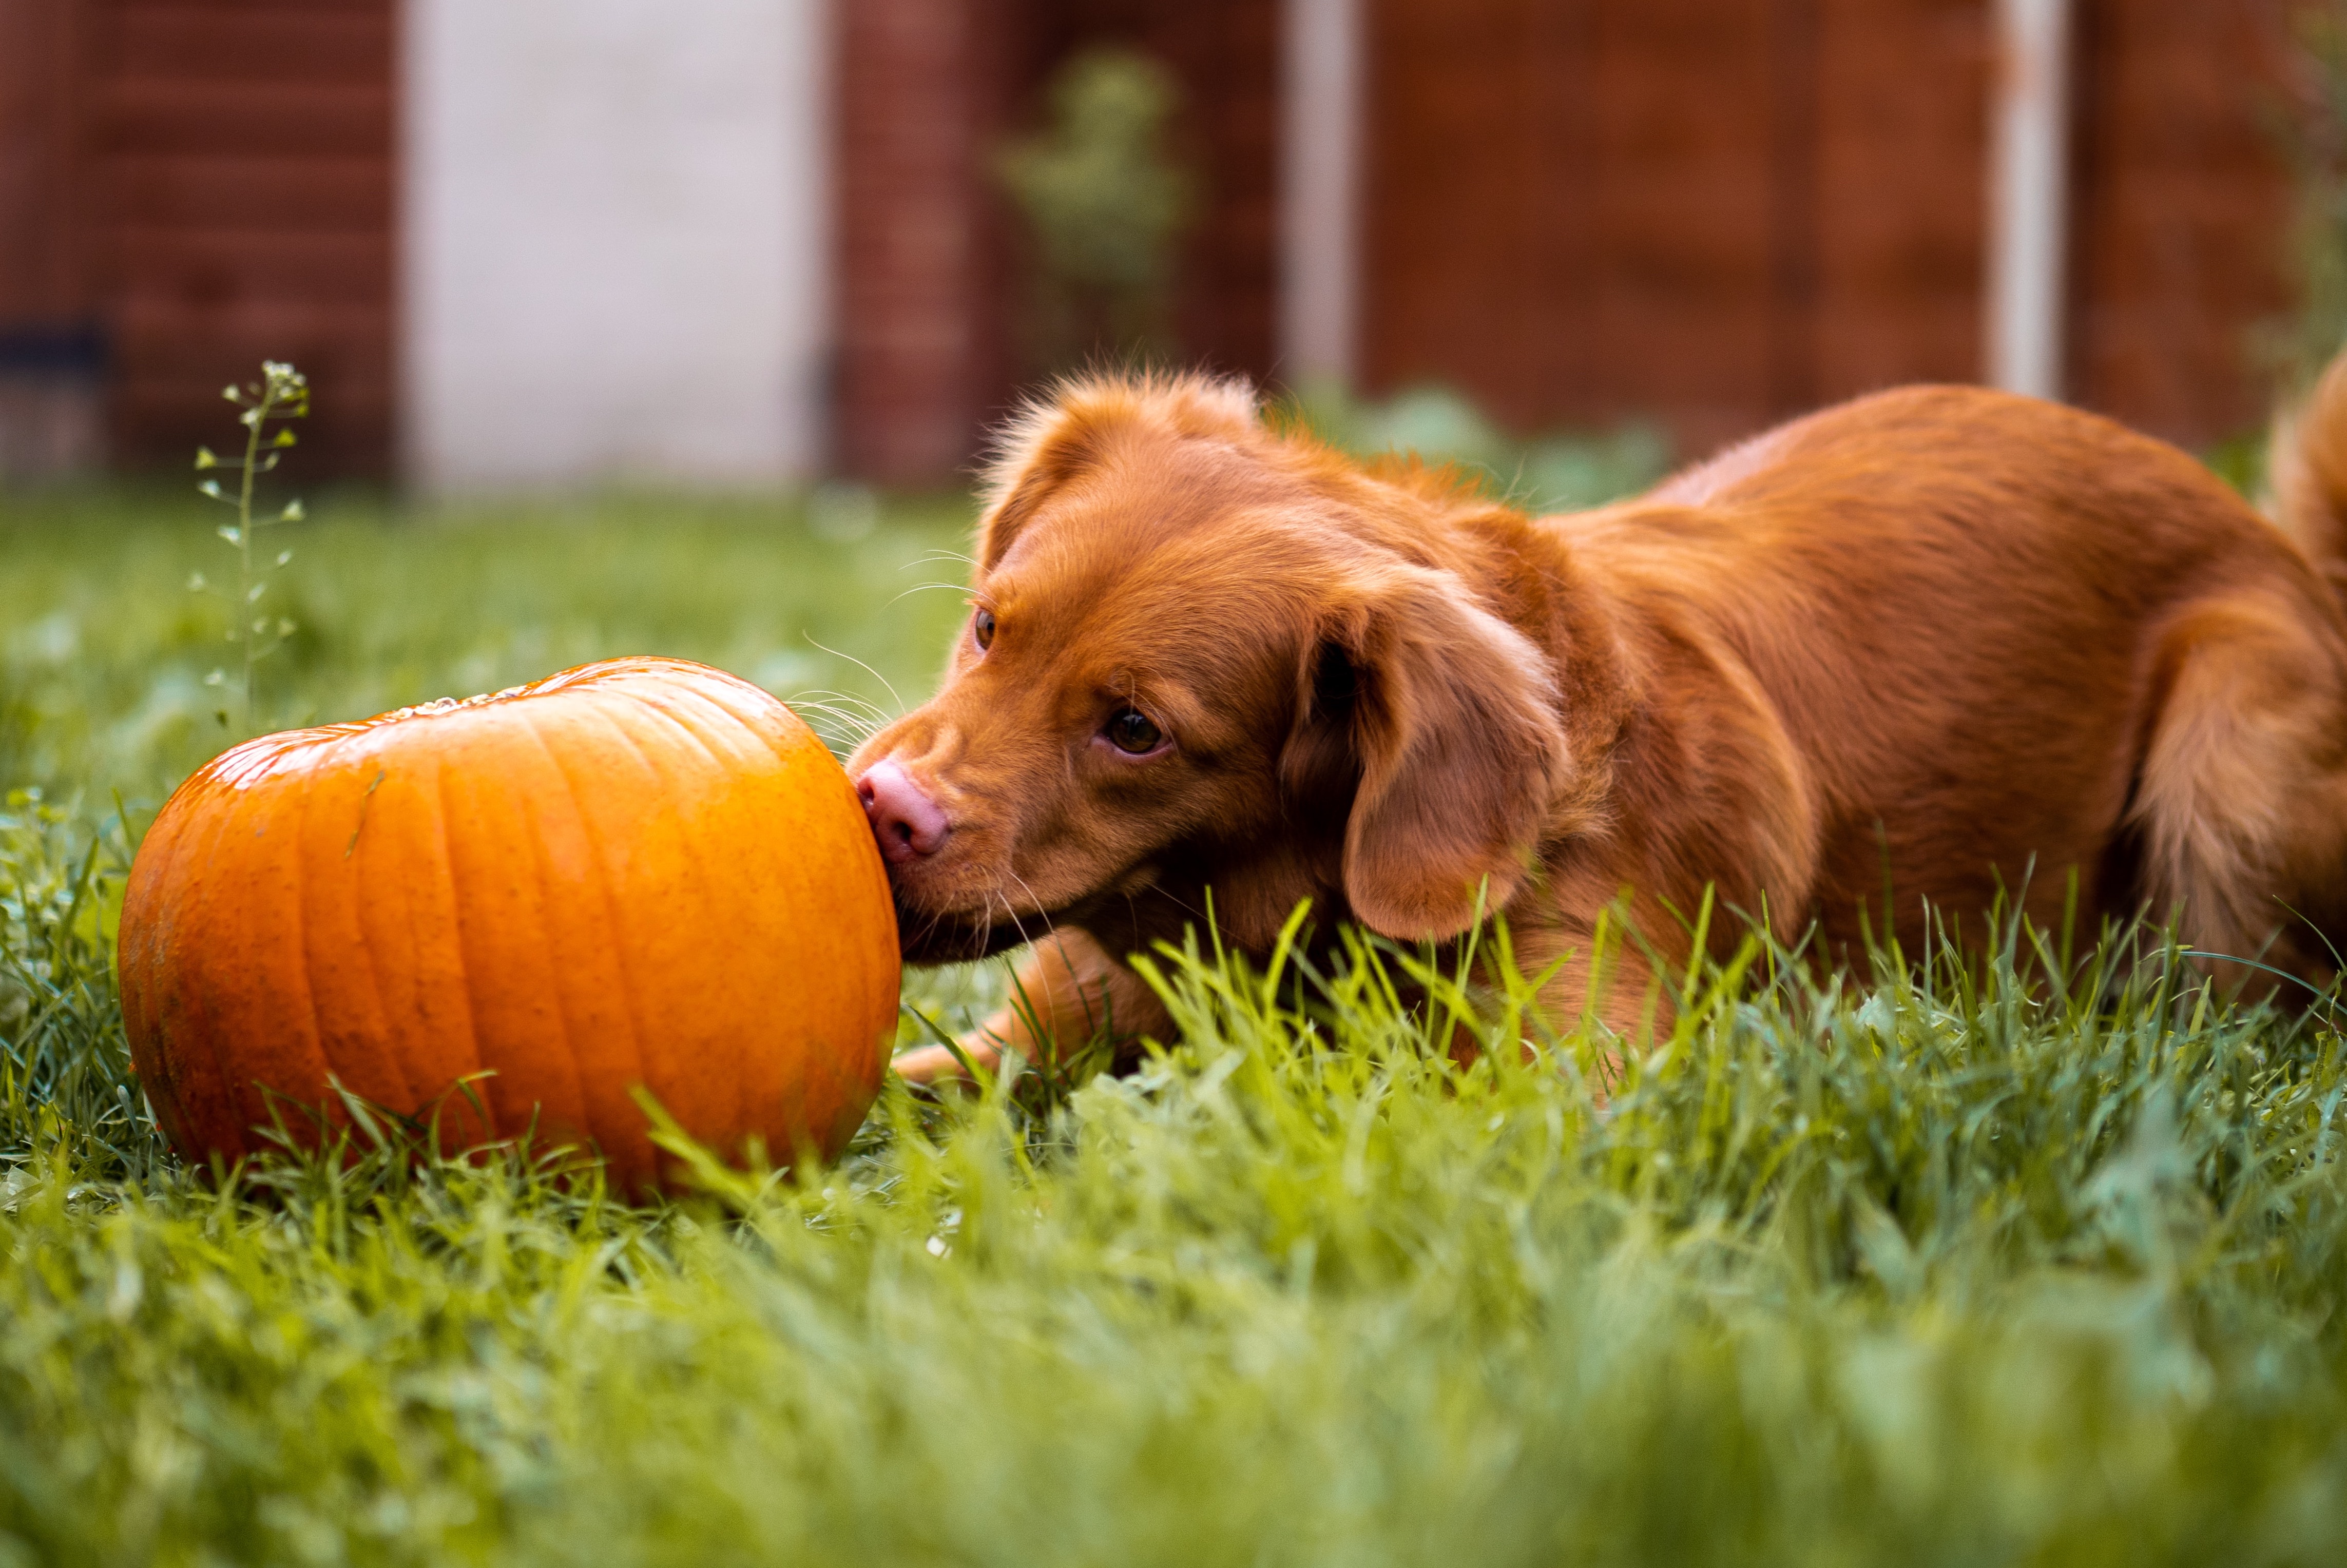 Puppy with a pumpkin